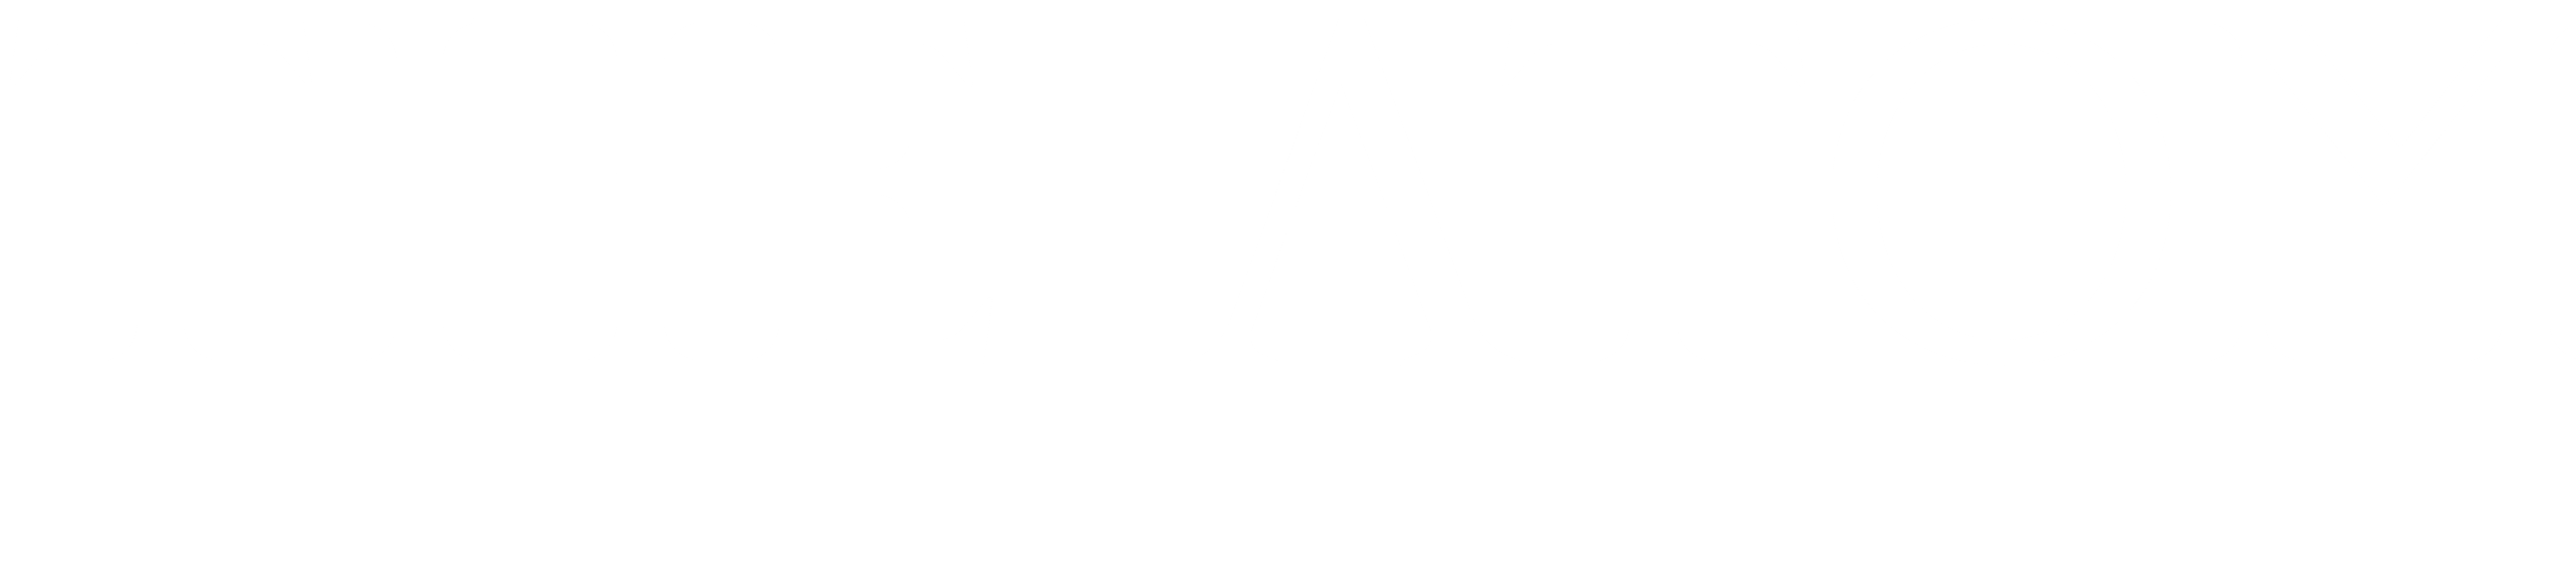 ATOM Logo